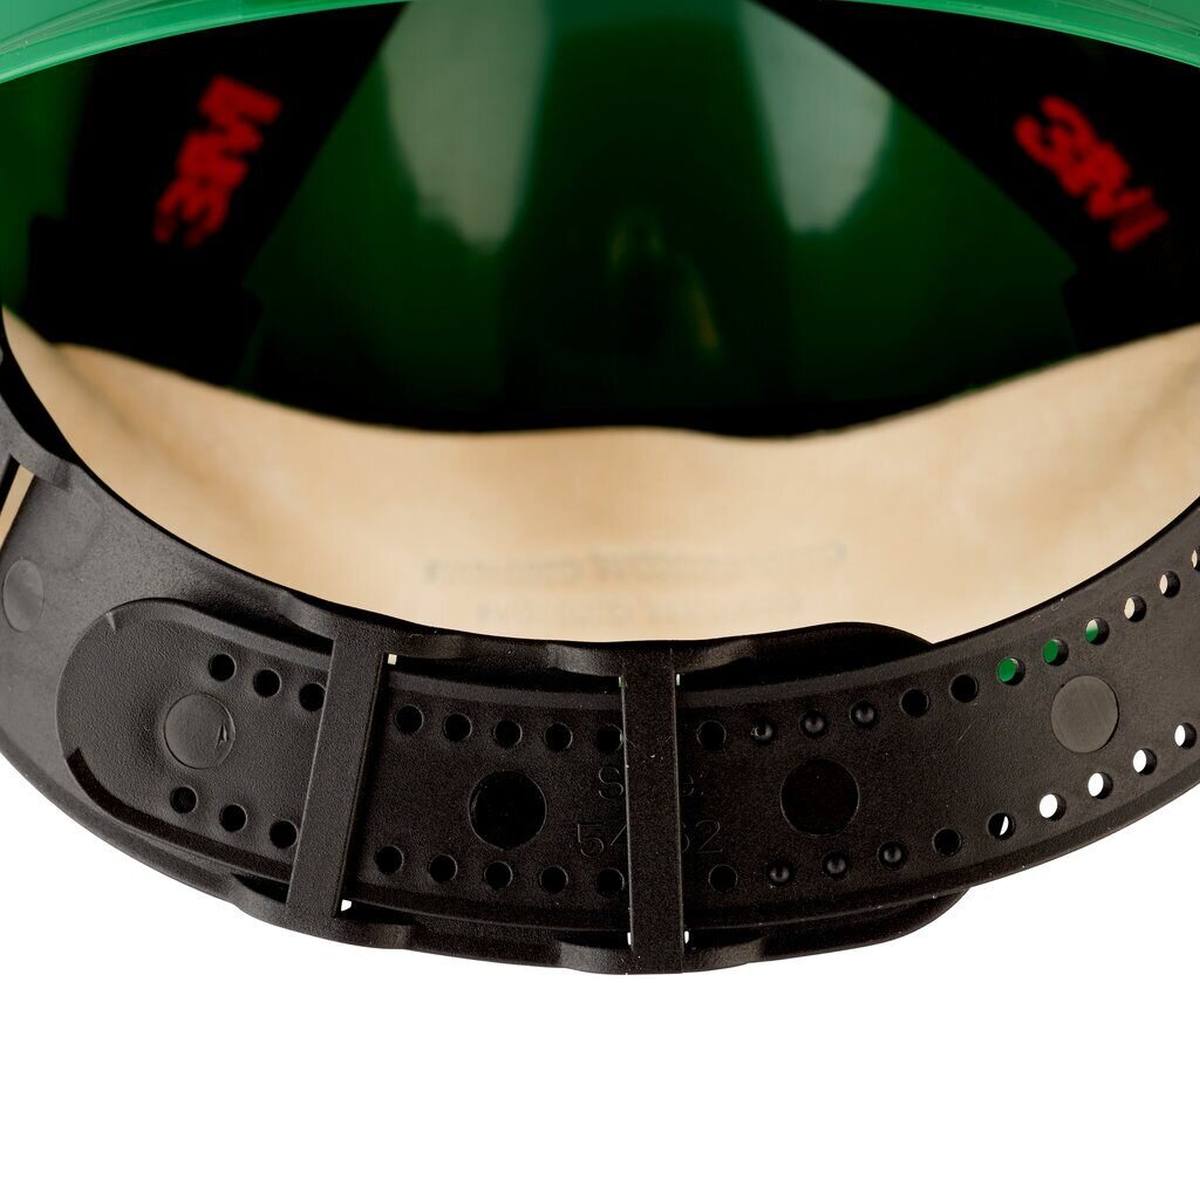 elmetto di sicurezza 3M G3000 G30DUG di colore verde, ventilato, con uvicatore, pinlock e fascia antisudore in pelle